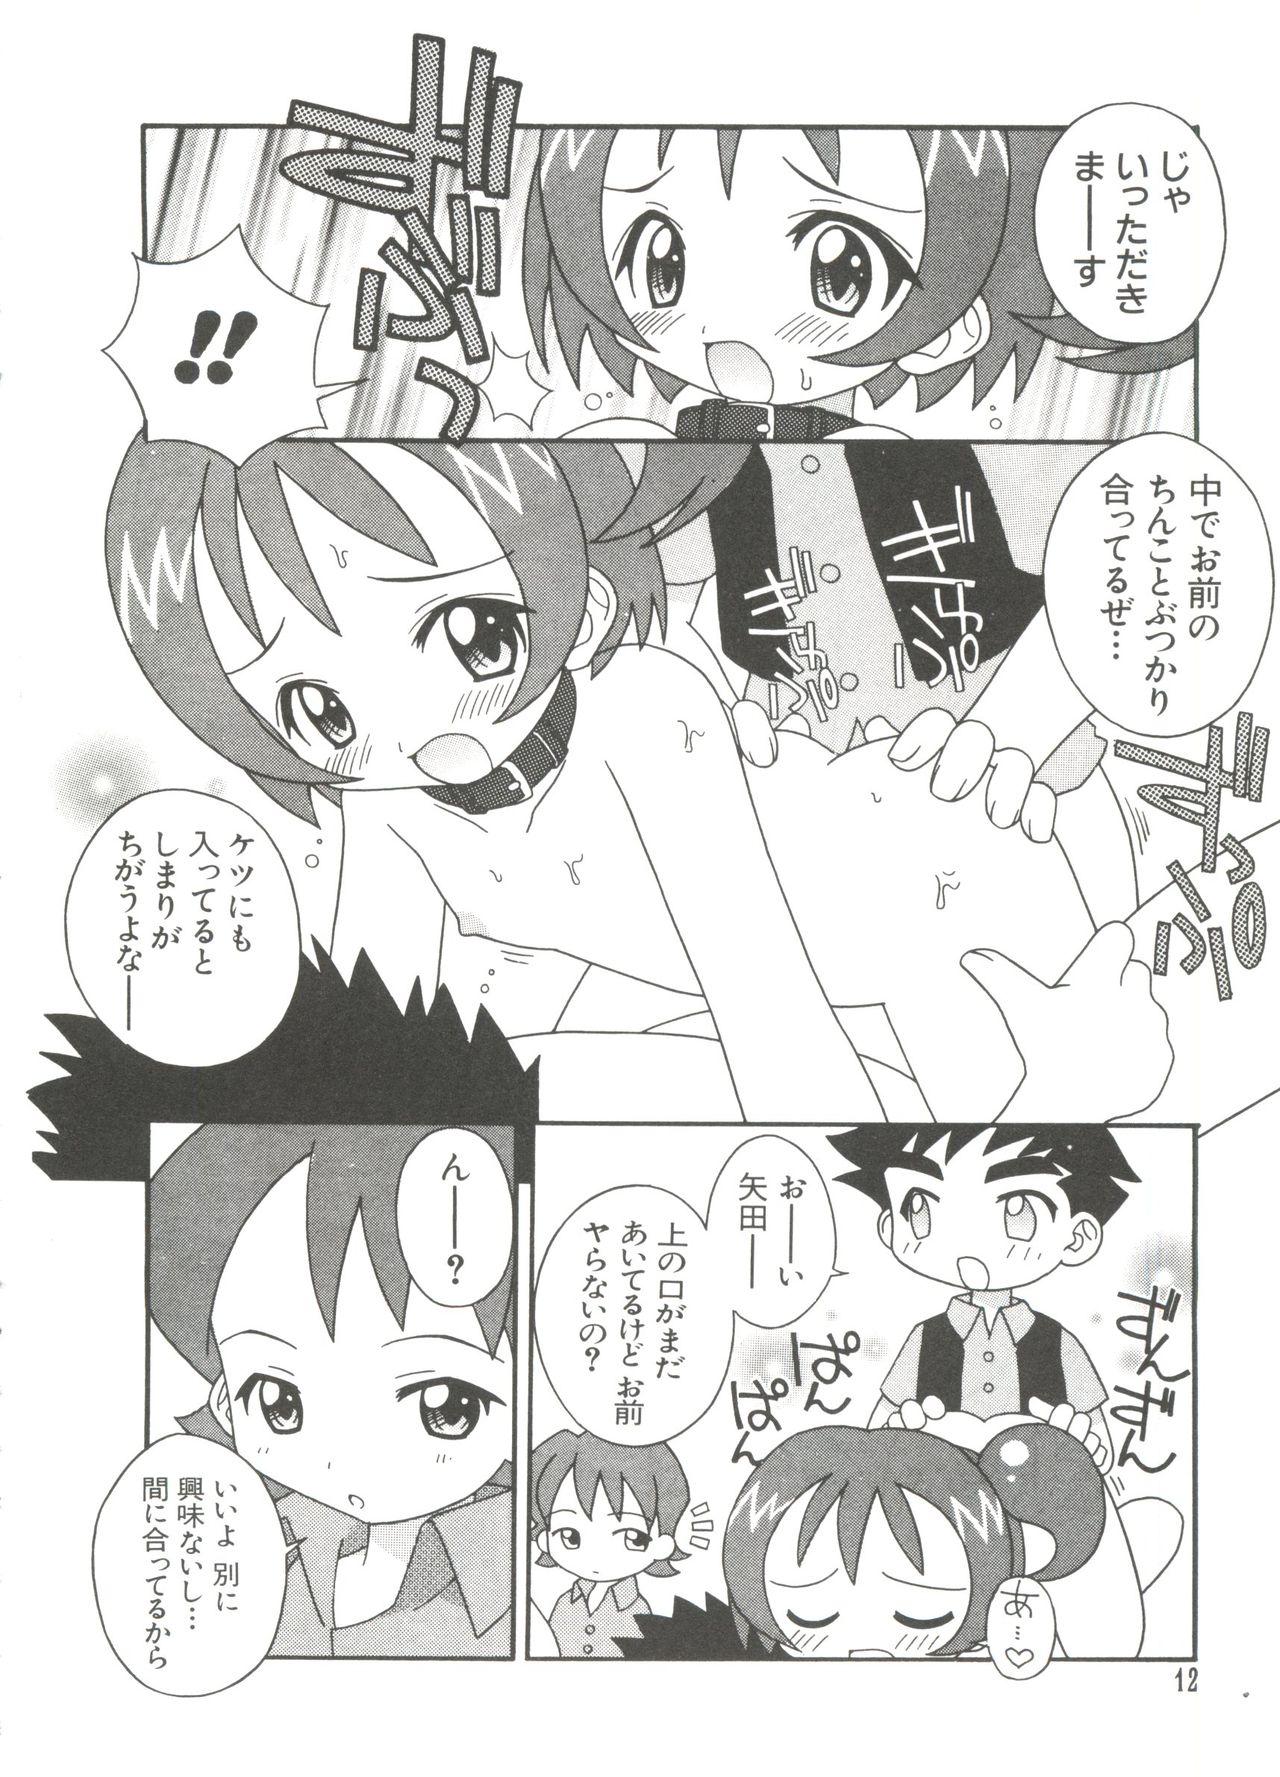 Interacial 3 nen 2 Kumi Maho Gumi!! 2 - Ojamajo doremi Horny - Page 12